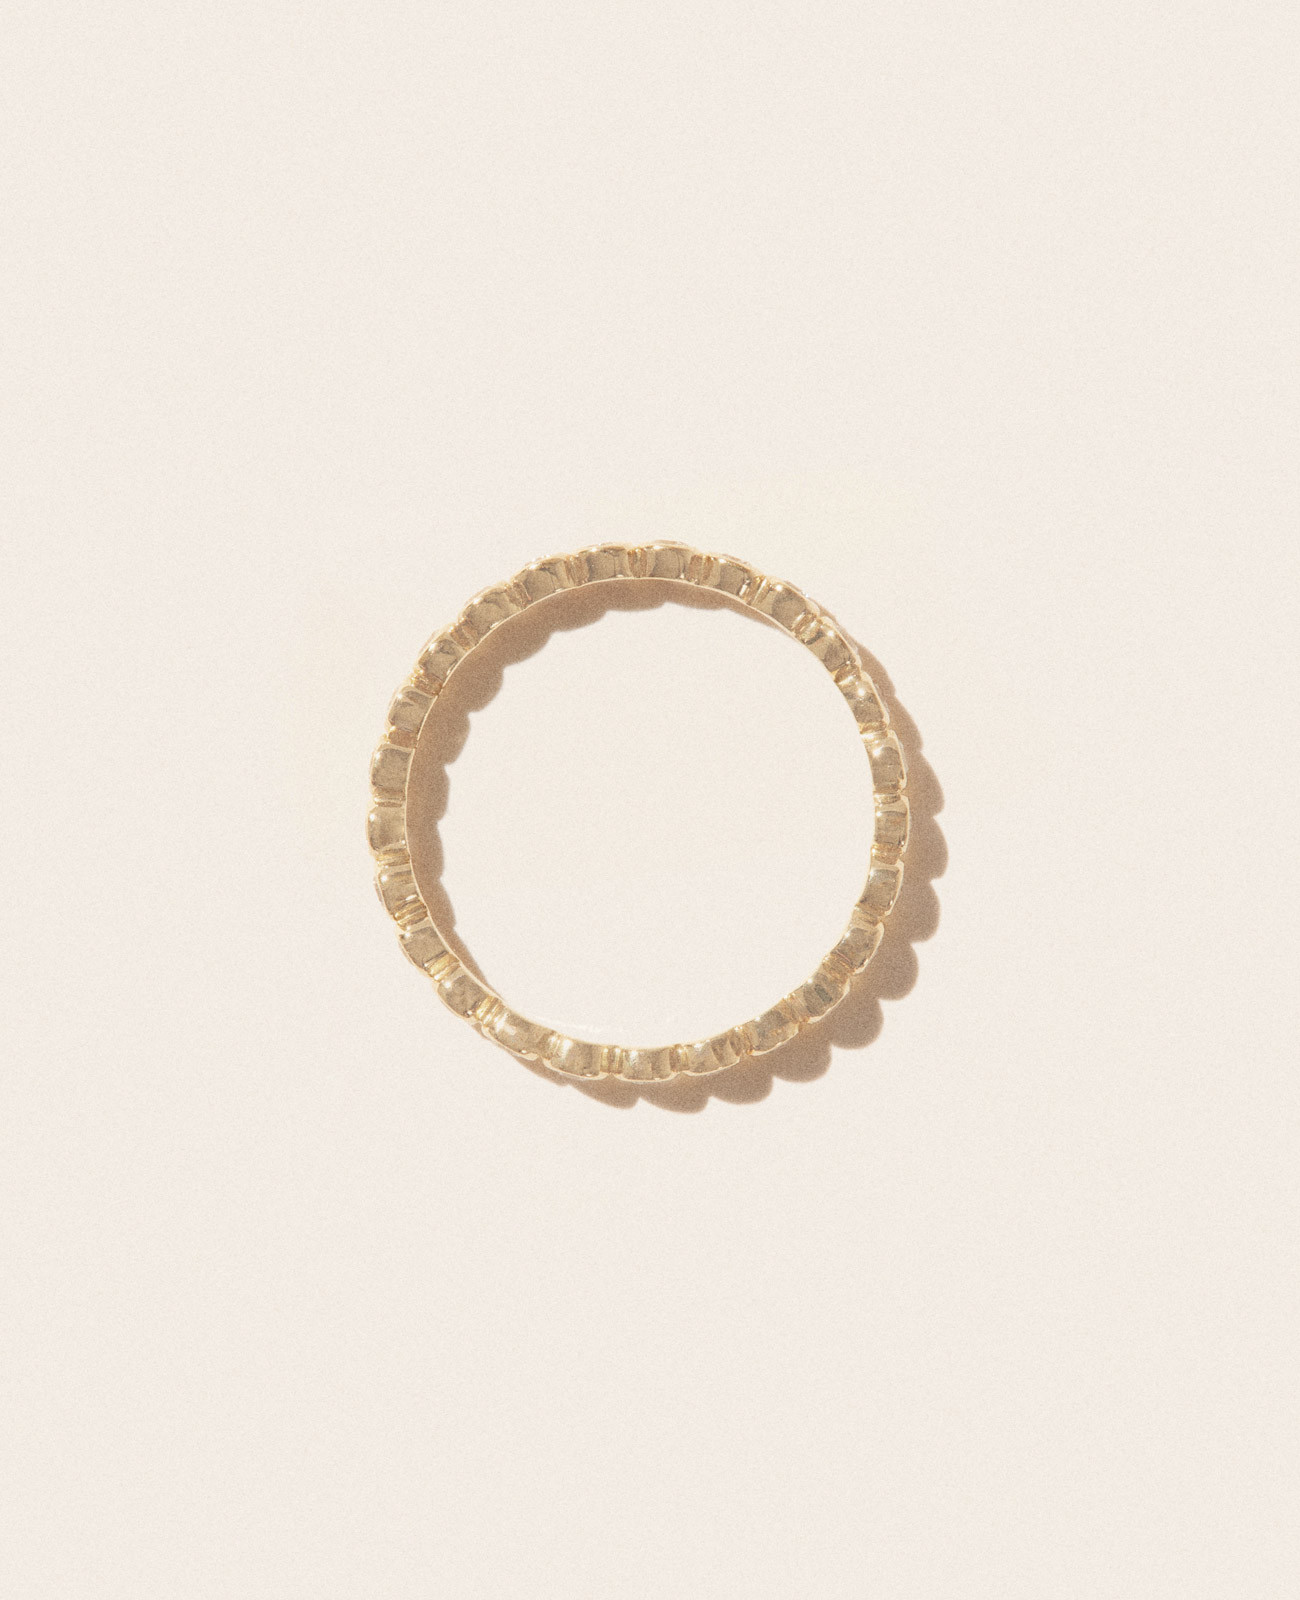 SUN N°1 DIAMOND ring pascale monvoisin jewelry paris